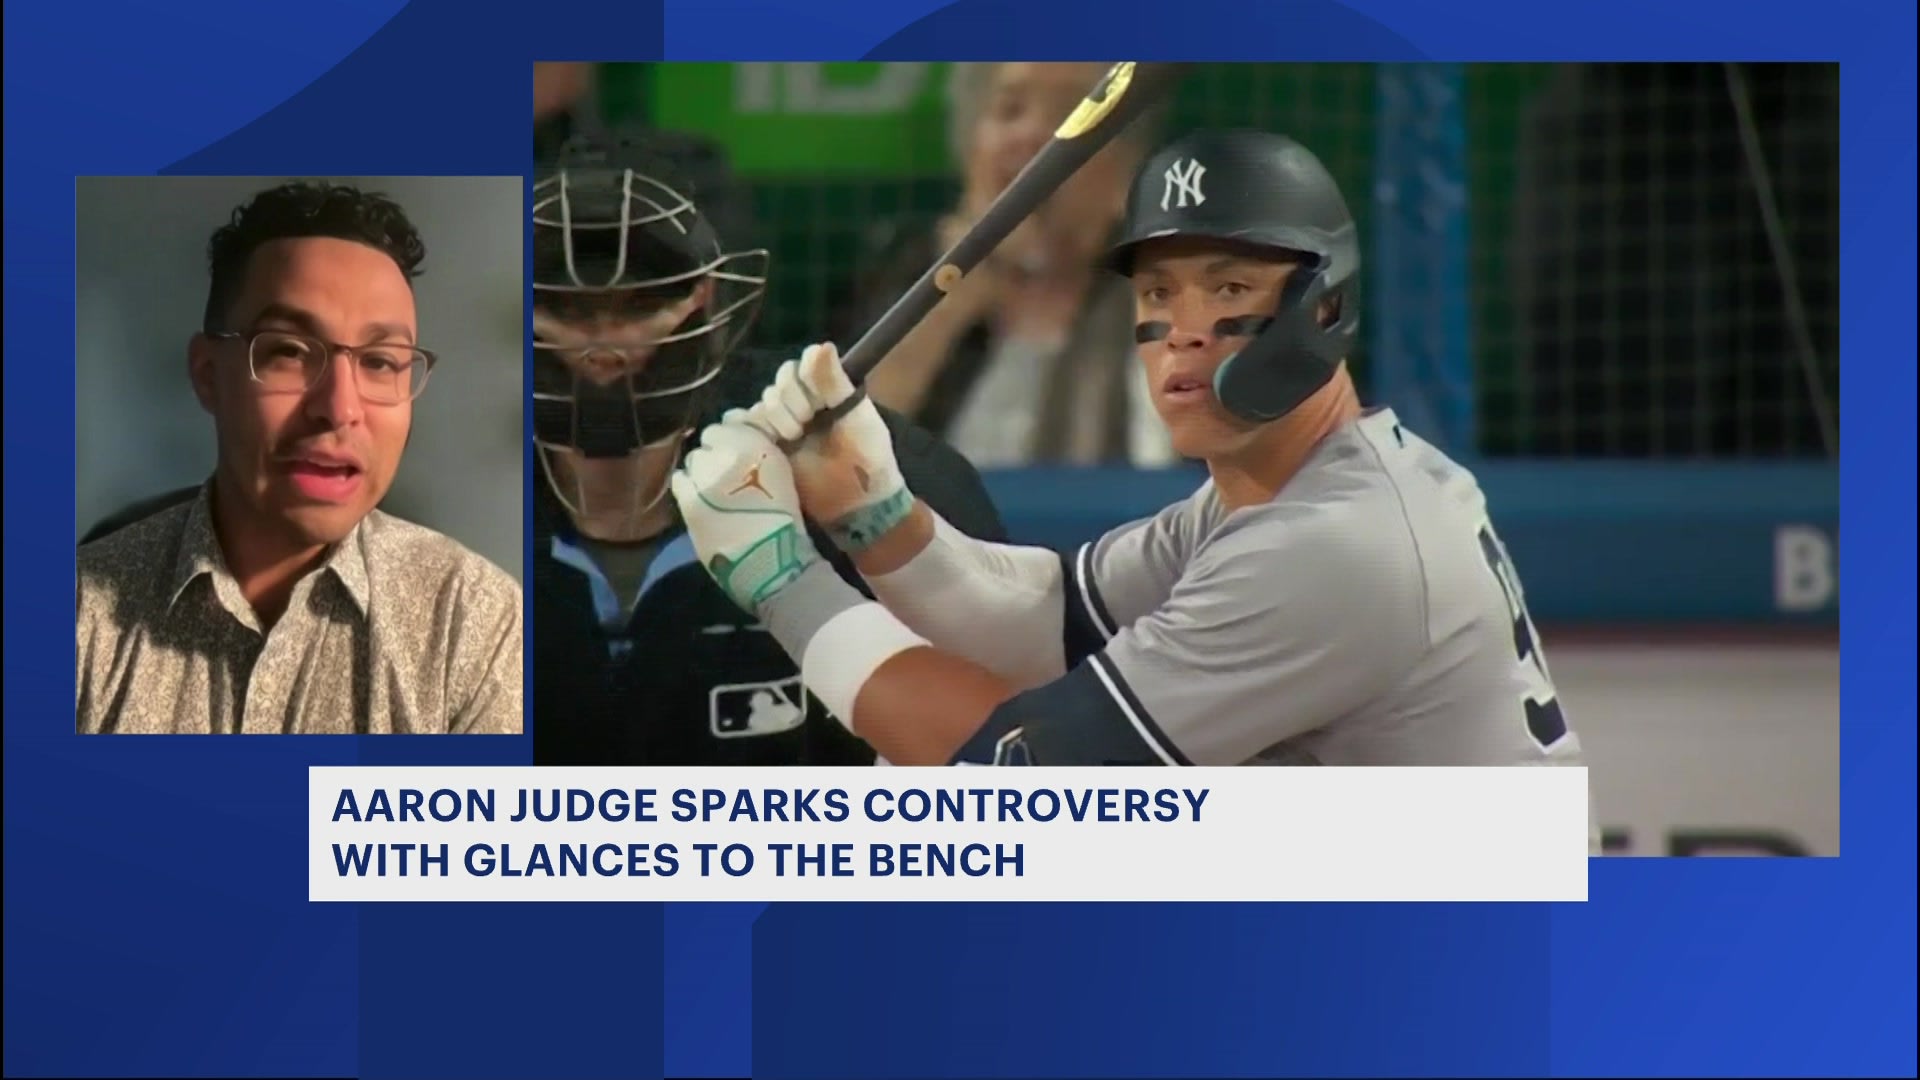 Blue Jays broadcasters pick up on Aaron Judge's odd look toward